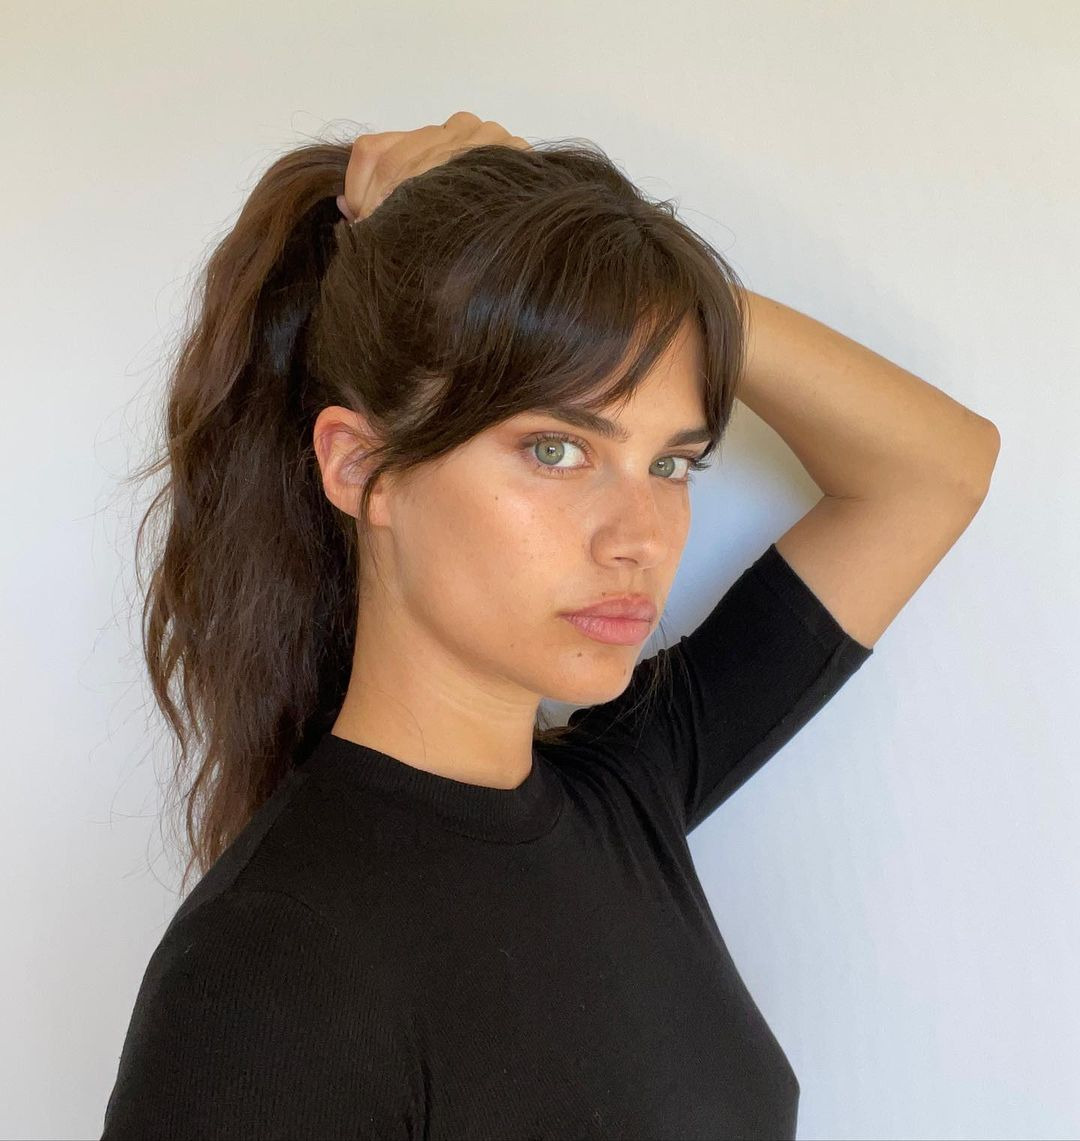 Negin Mirsalehi'den Bridget Malcolm'a Haftanın Güzellik Instagramları